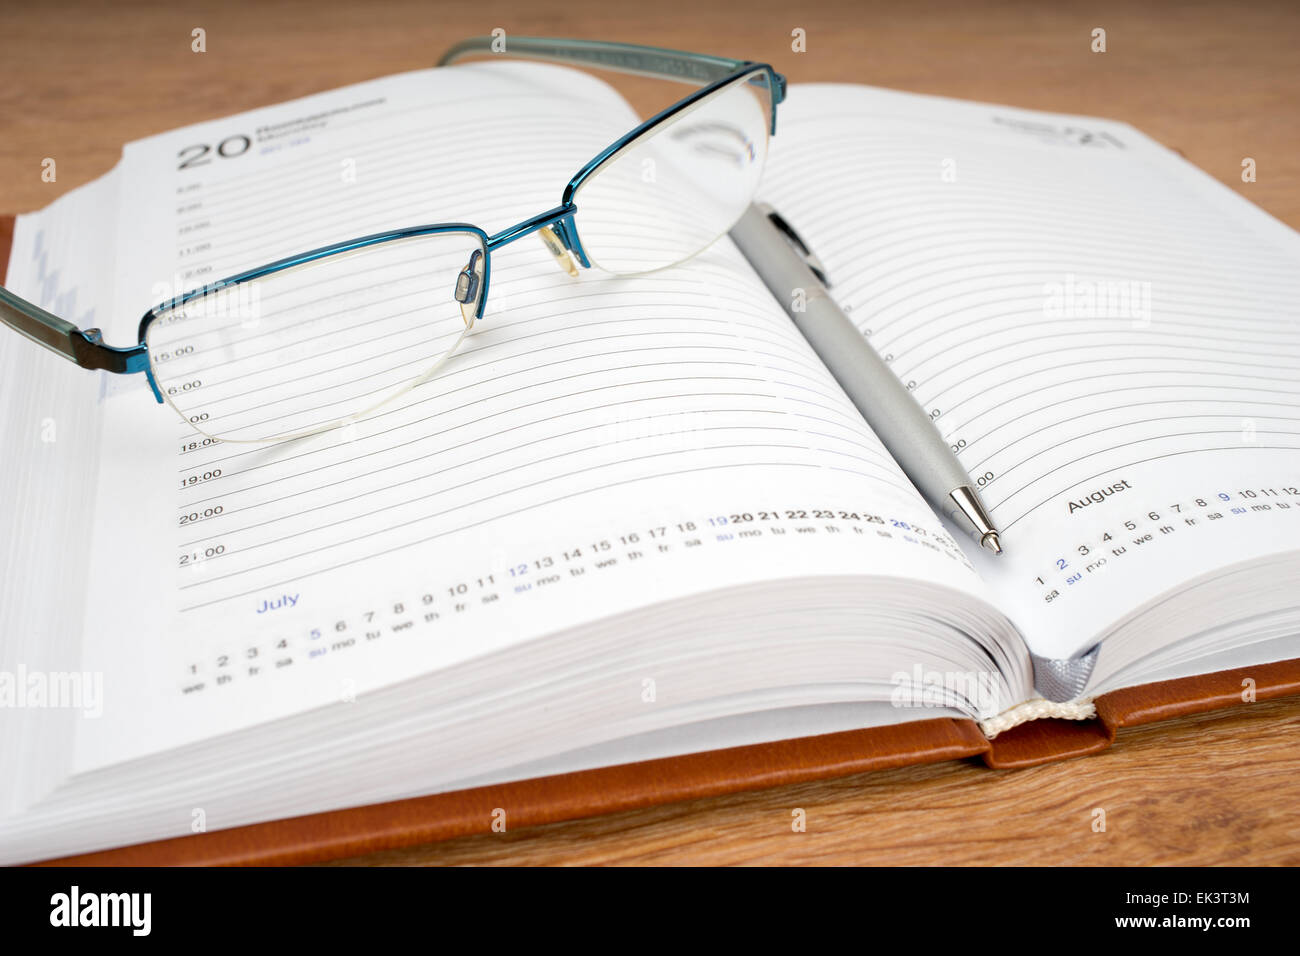 Planificateur quotidien avec des lunettes et un stylo sur la table Banque D'Images